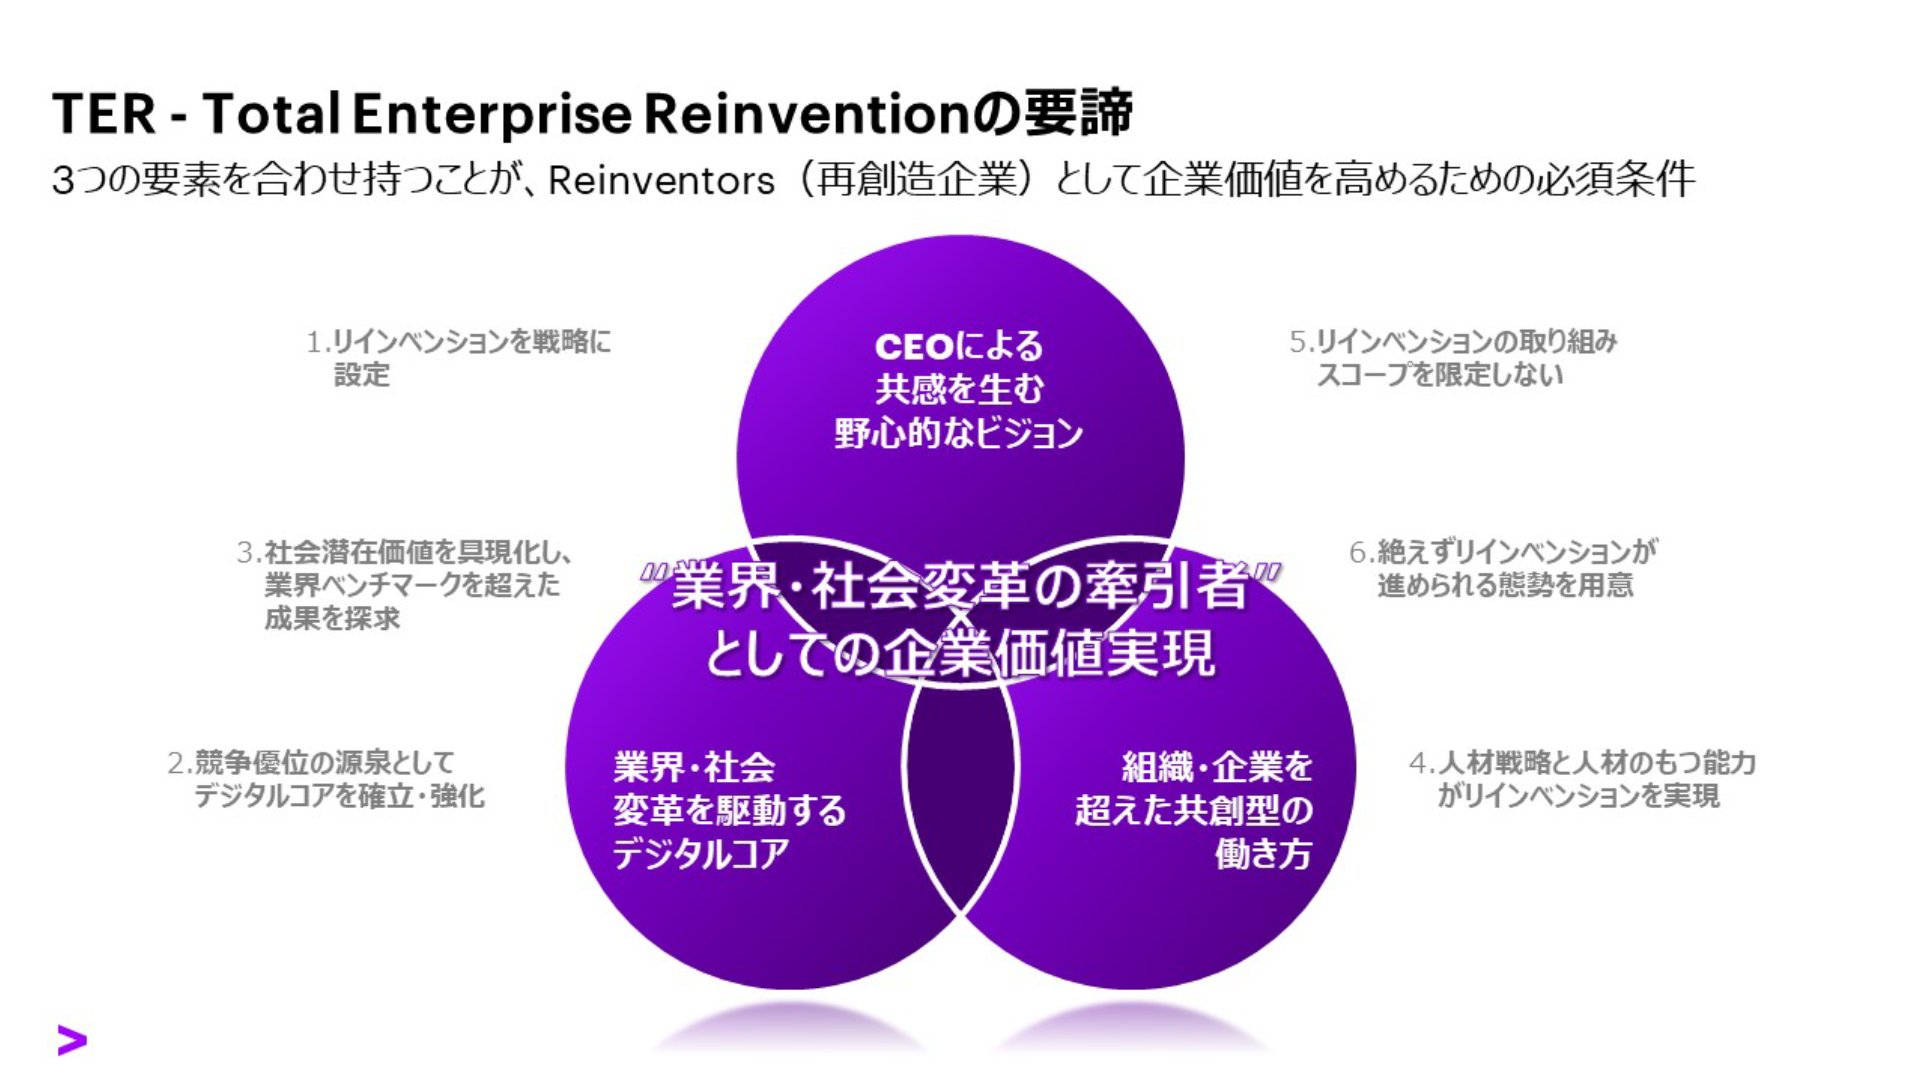 トータル・エンタープライズ・リインベンション：持続的成長を実現する企業体質と日本企業の課題 | アクセンチュア